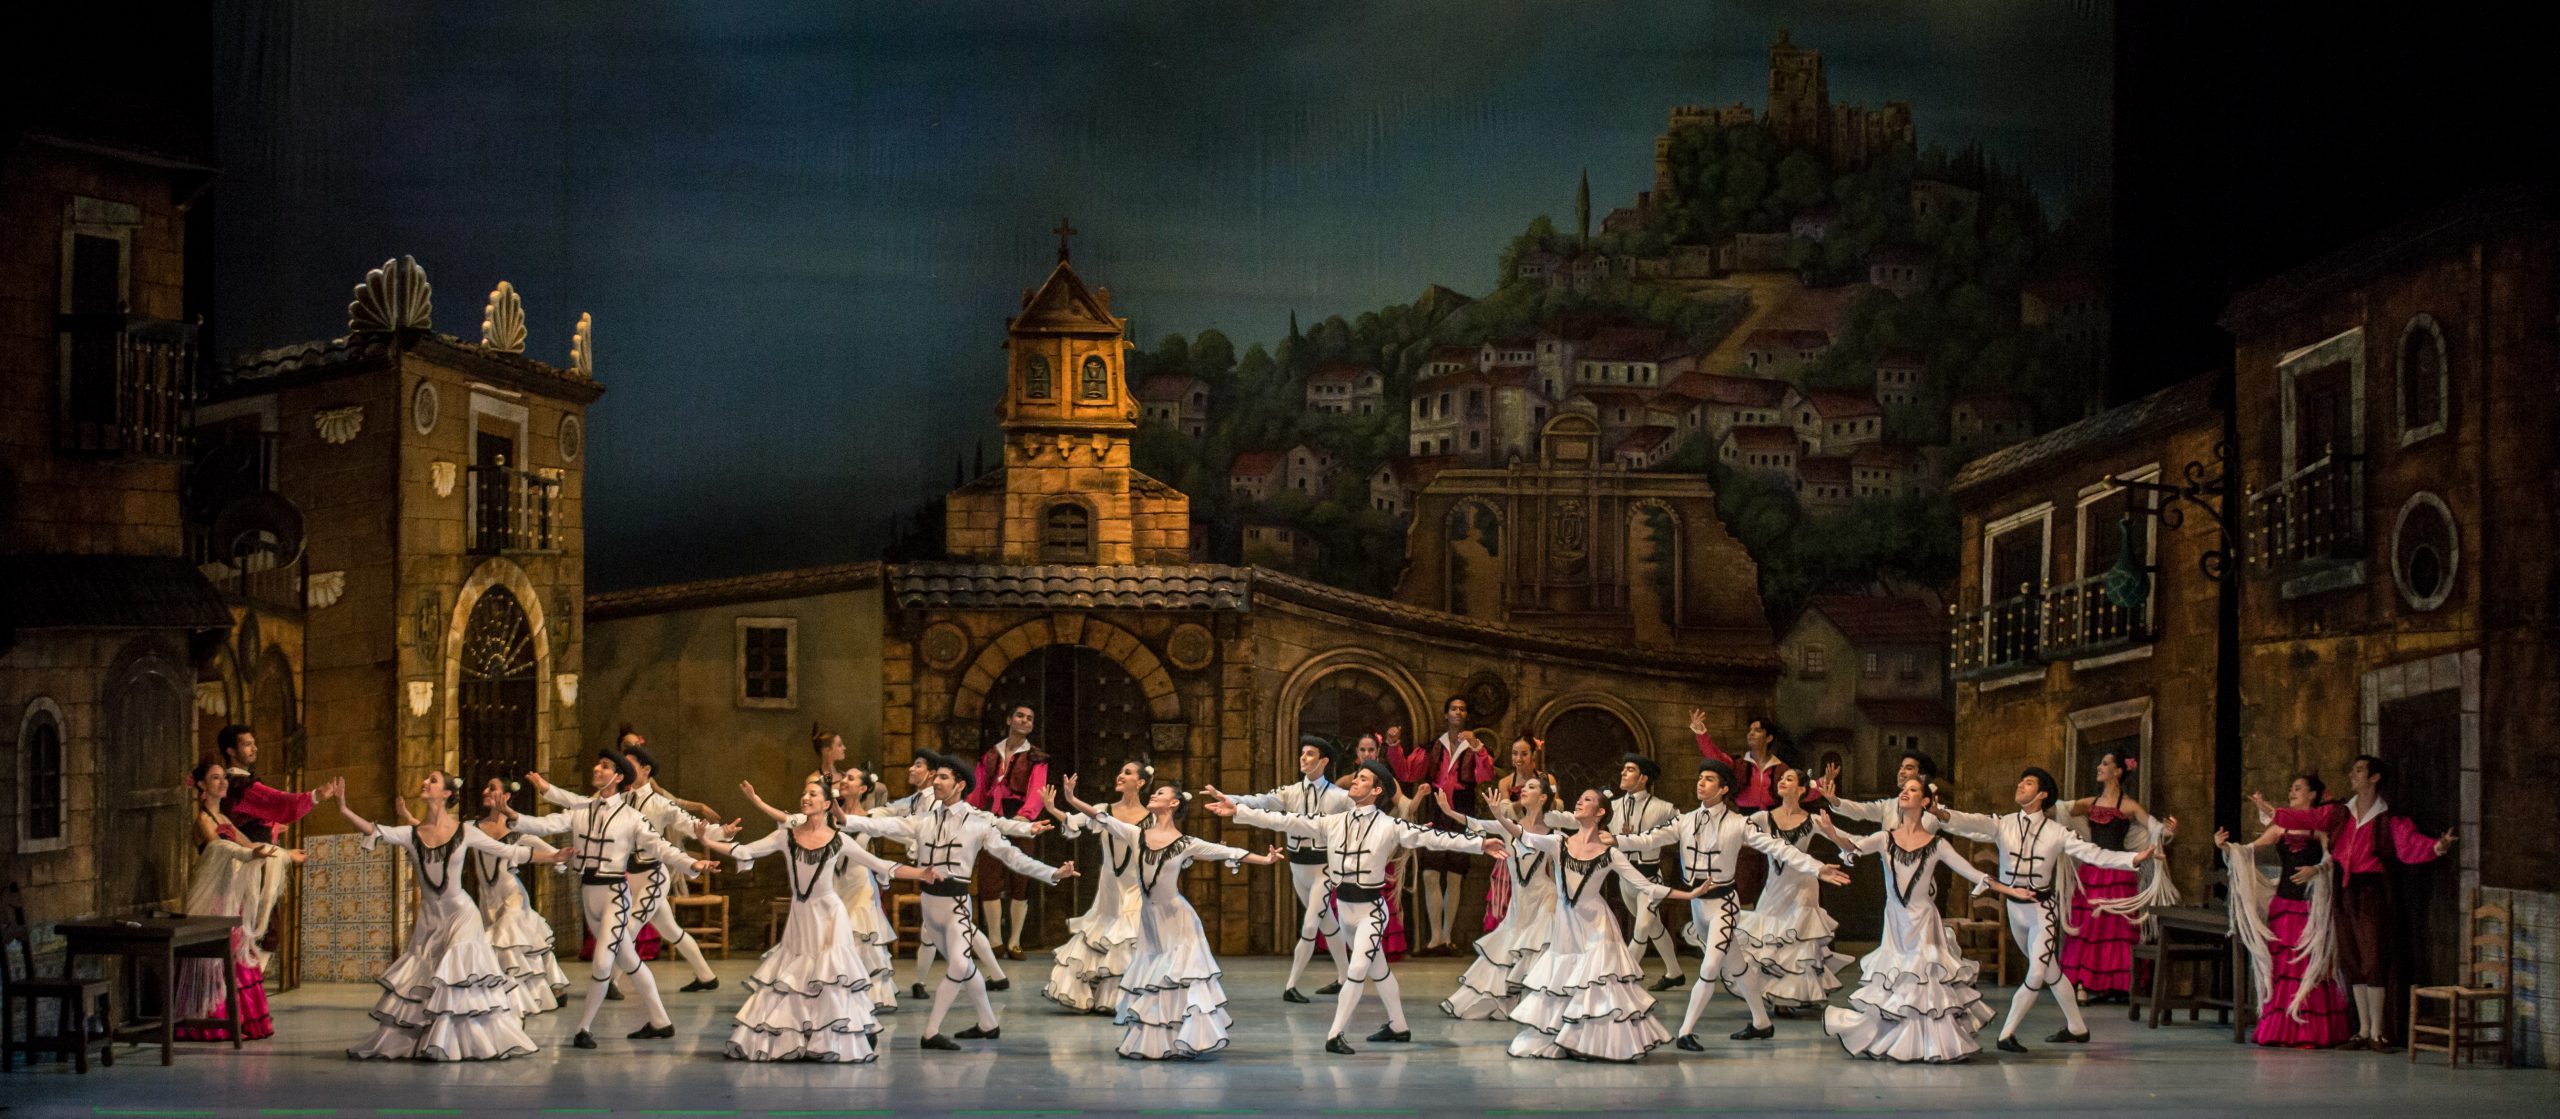 La Compañía Nacional de Danza regresará al Teatro de la Ciudad Esperanza Iris con Don Quijote, versión de Caroline Llorca